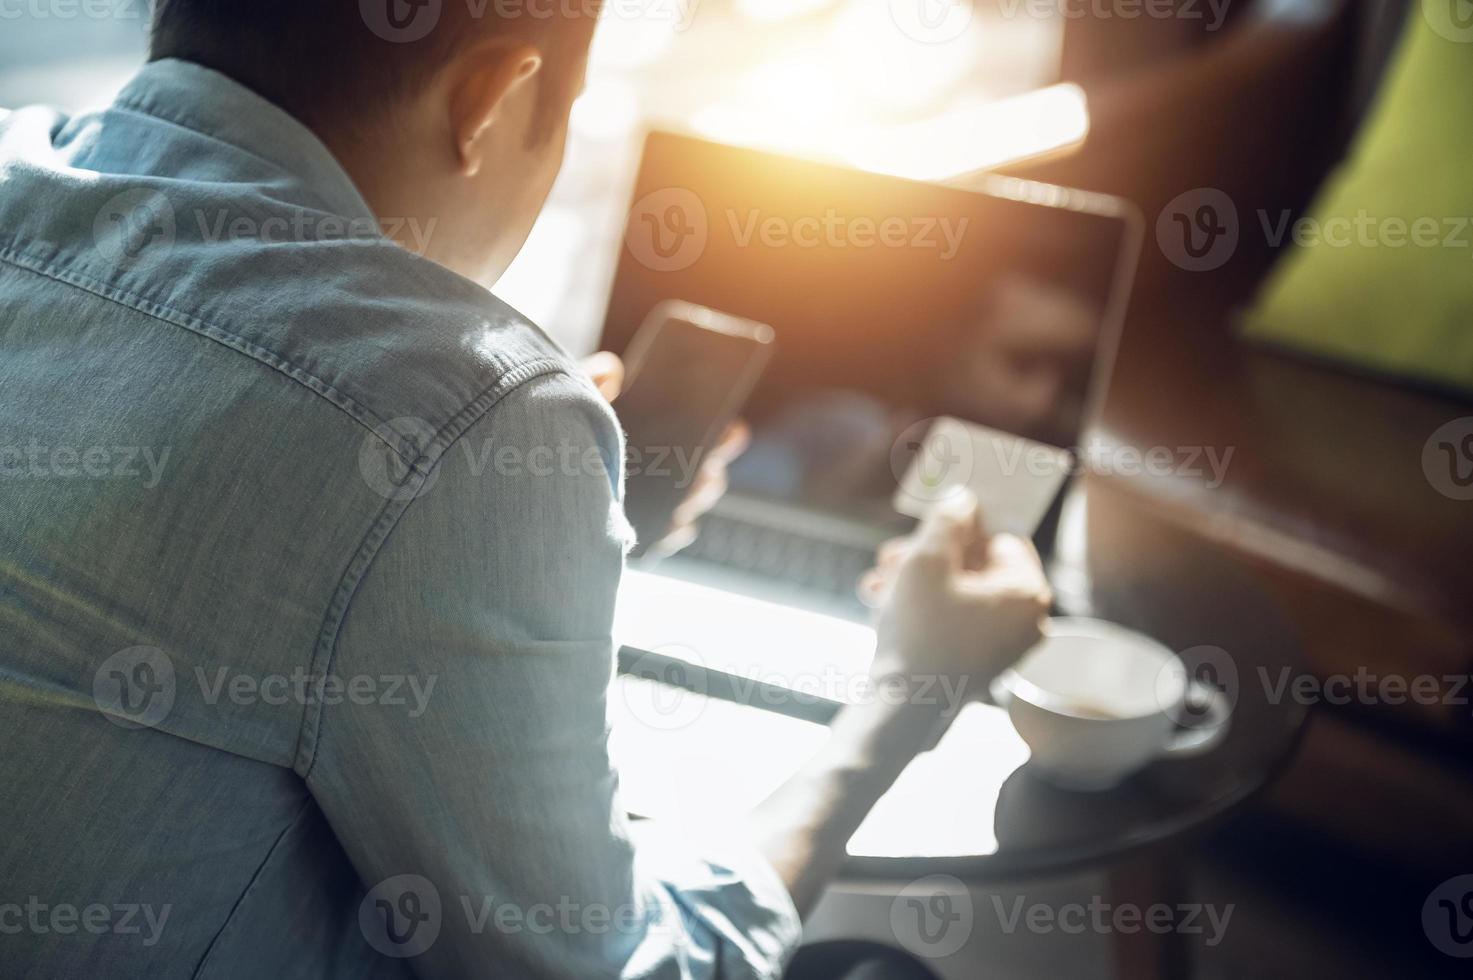 jovem asiático segurando o cartão de crédito e usando o pagamento on-line do laptop, conceito de compras on-line com cartão de crédito no café foto